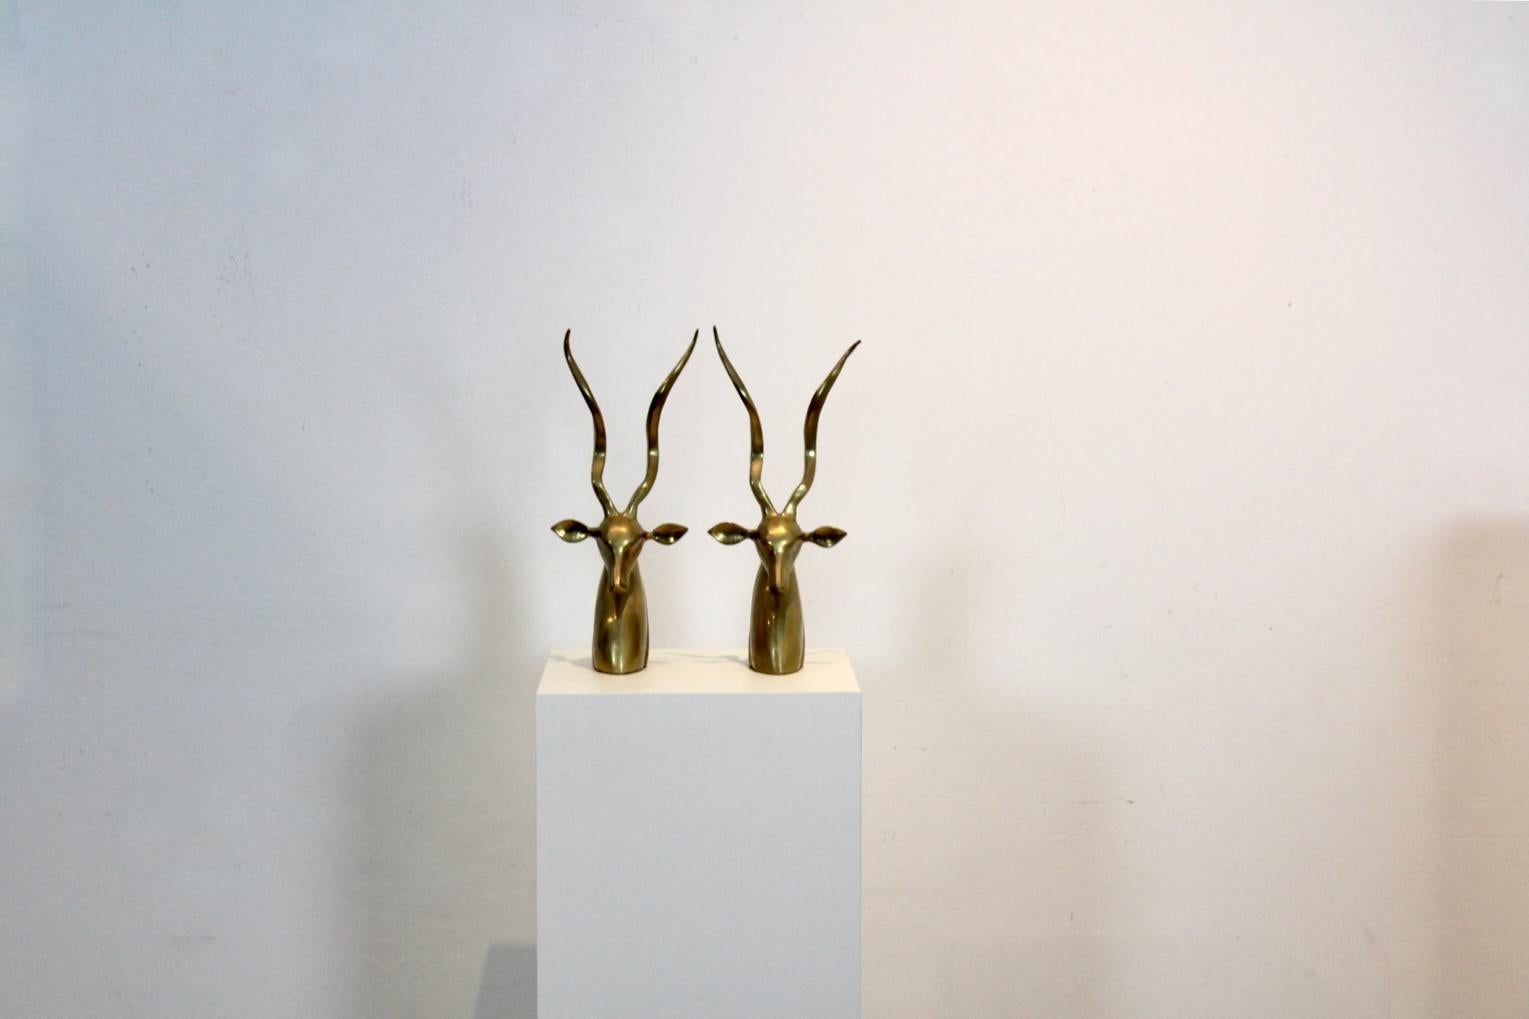 Exklusive und anmutige Kudu-/Antilopenbüsten aus Messing, entworfen von Karl Springer. Das Set besteht aus zwei massiven Messingbüsten mit hohen gedrehten Hörnern. Das Werk weist eine gewisse Asymmetrie auf, die die organische Natur des Themas